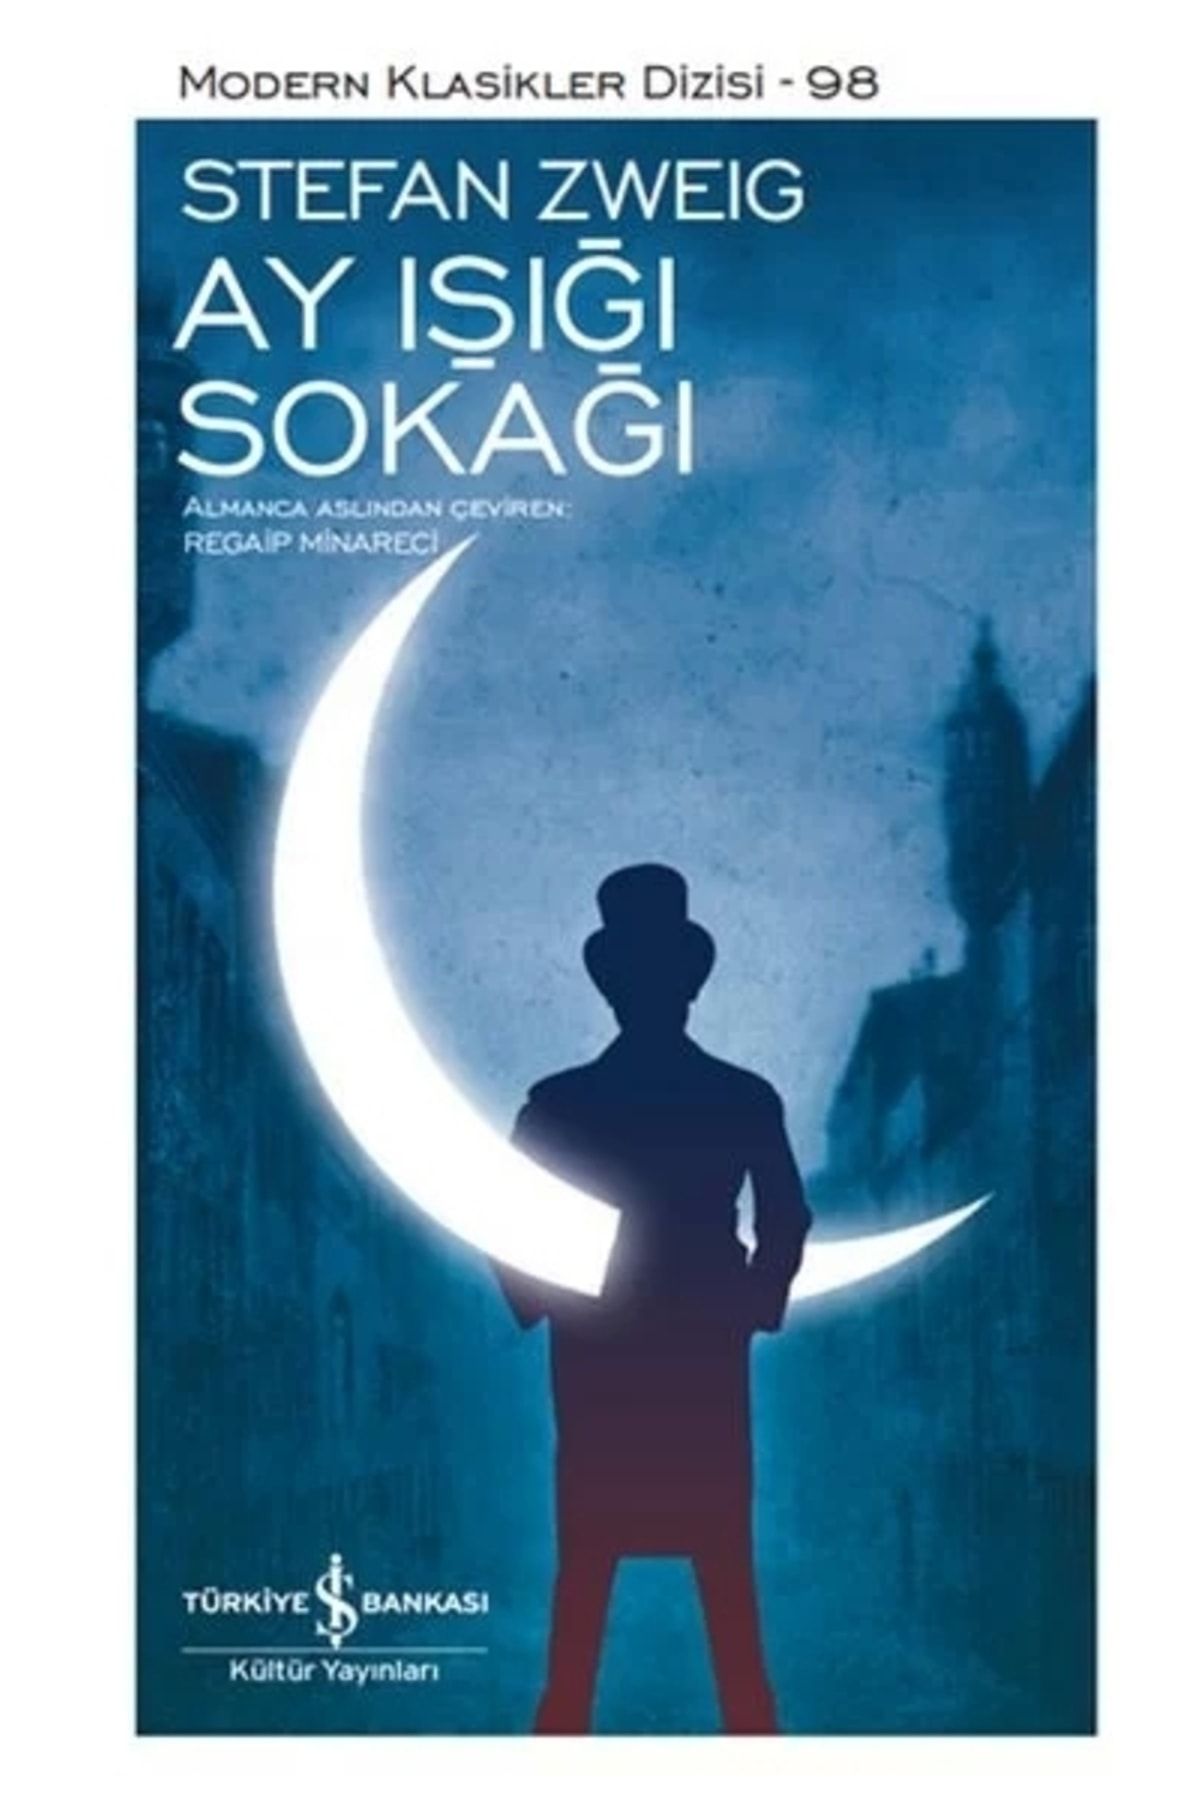 Türkiye İş Bankası Kültür Yayınları Ay Işığı Sokağı - Modern Klasikler Dizisi (şömizli)Stefan Zweig